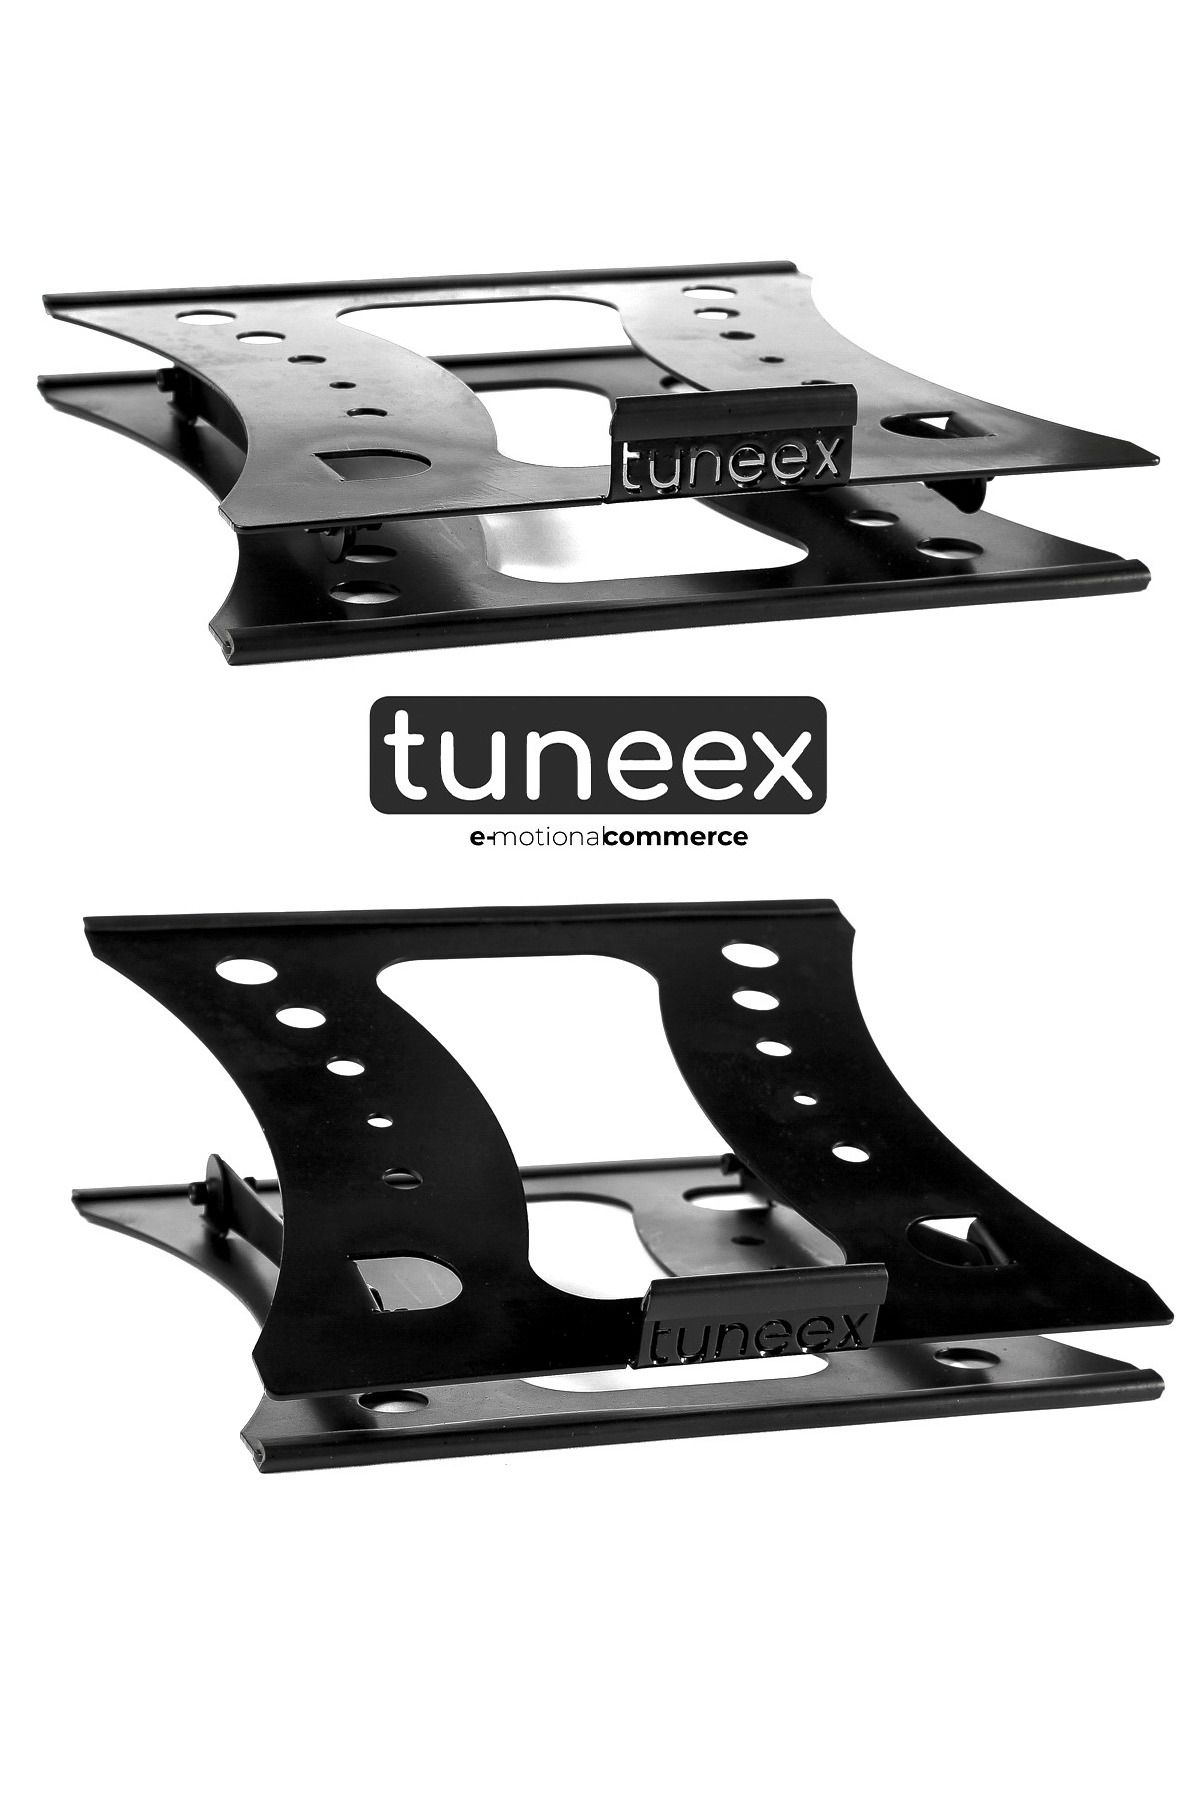 tuneex UNLIMITED - Tüm Modellerle Uyumlu Sınırsız Kademeli Çelik Notebook Laptop Standı Yükseltici Altlık